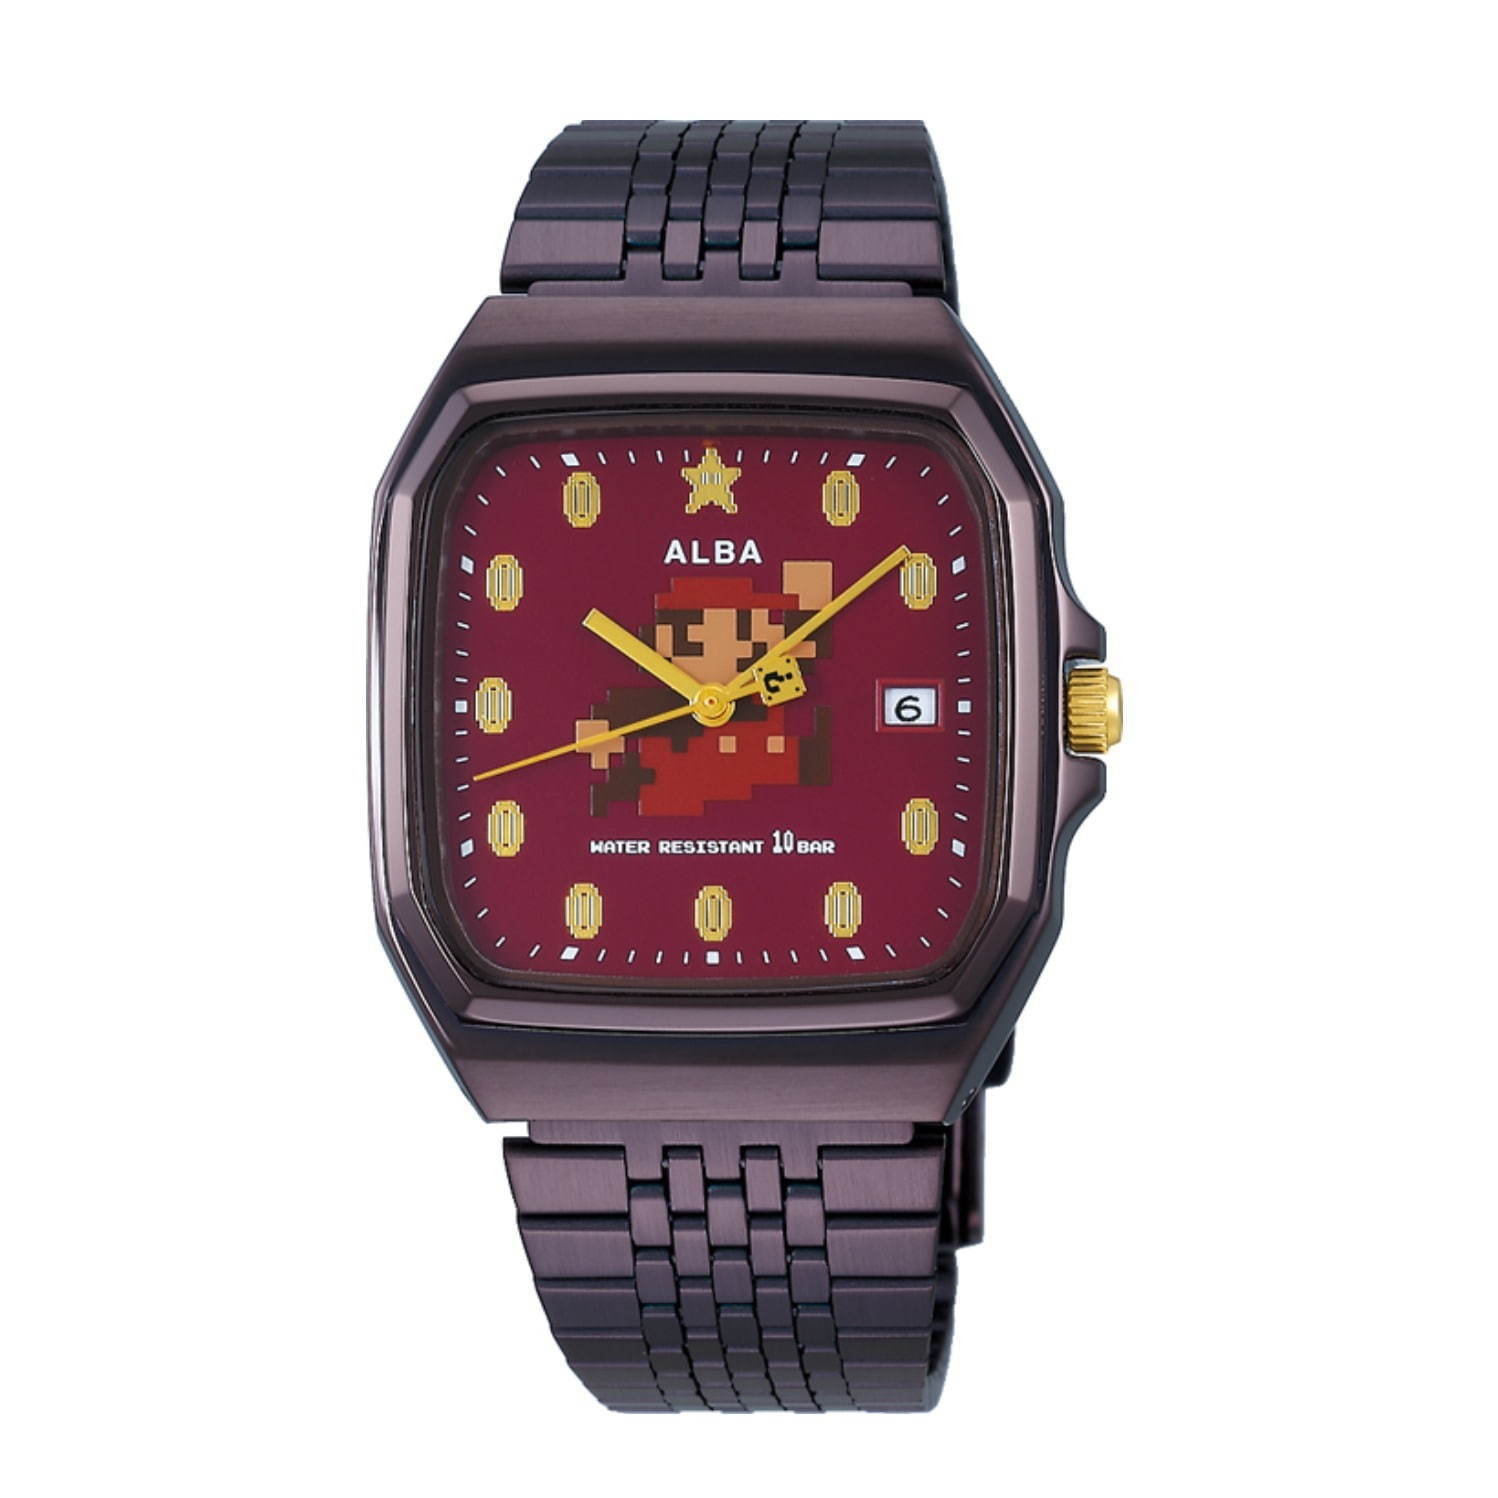 スーパーマリオ”コラボウオッチ、腕時計ブランド「アルバ」から